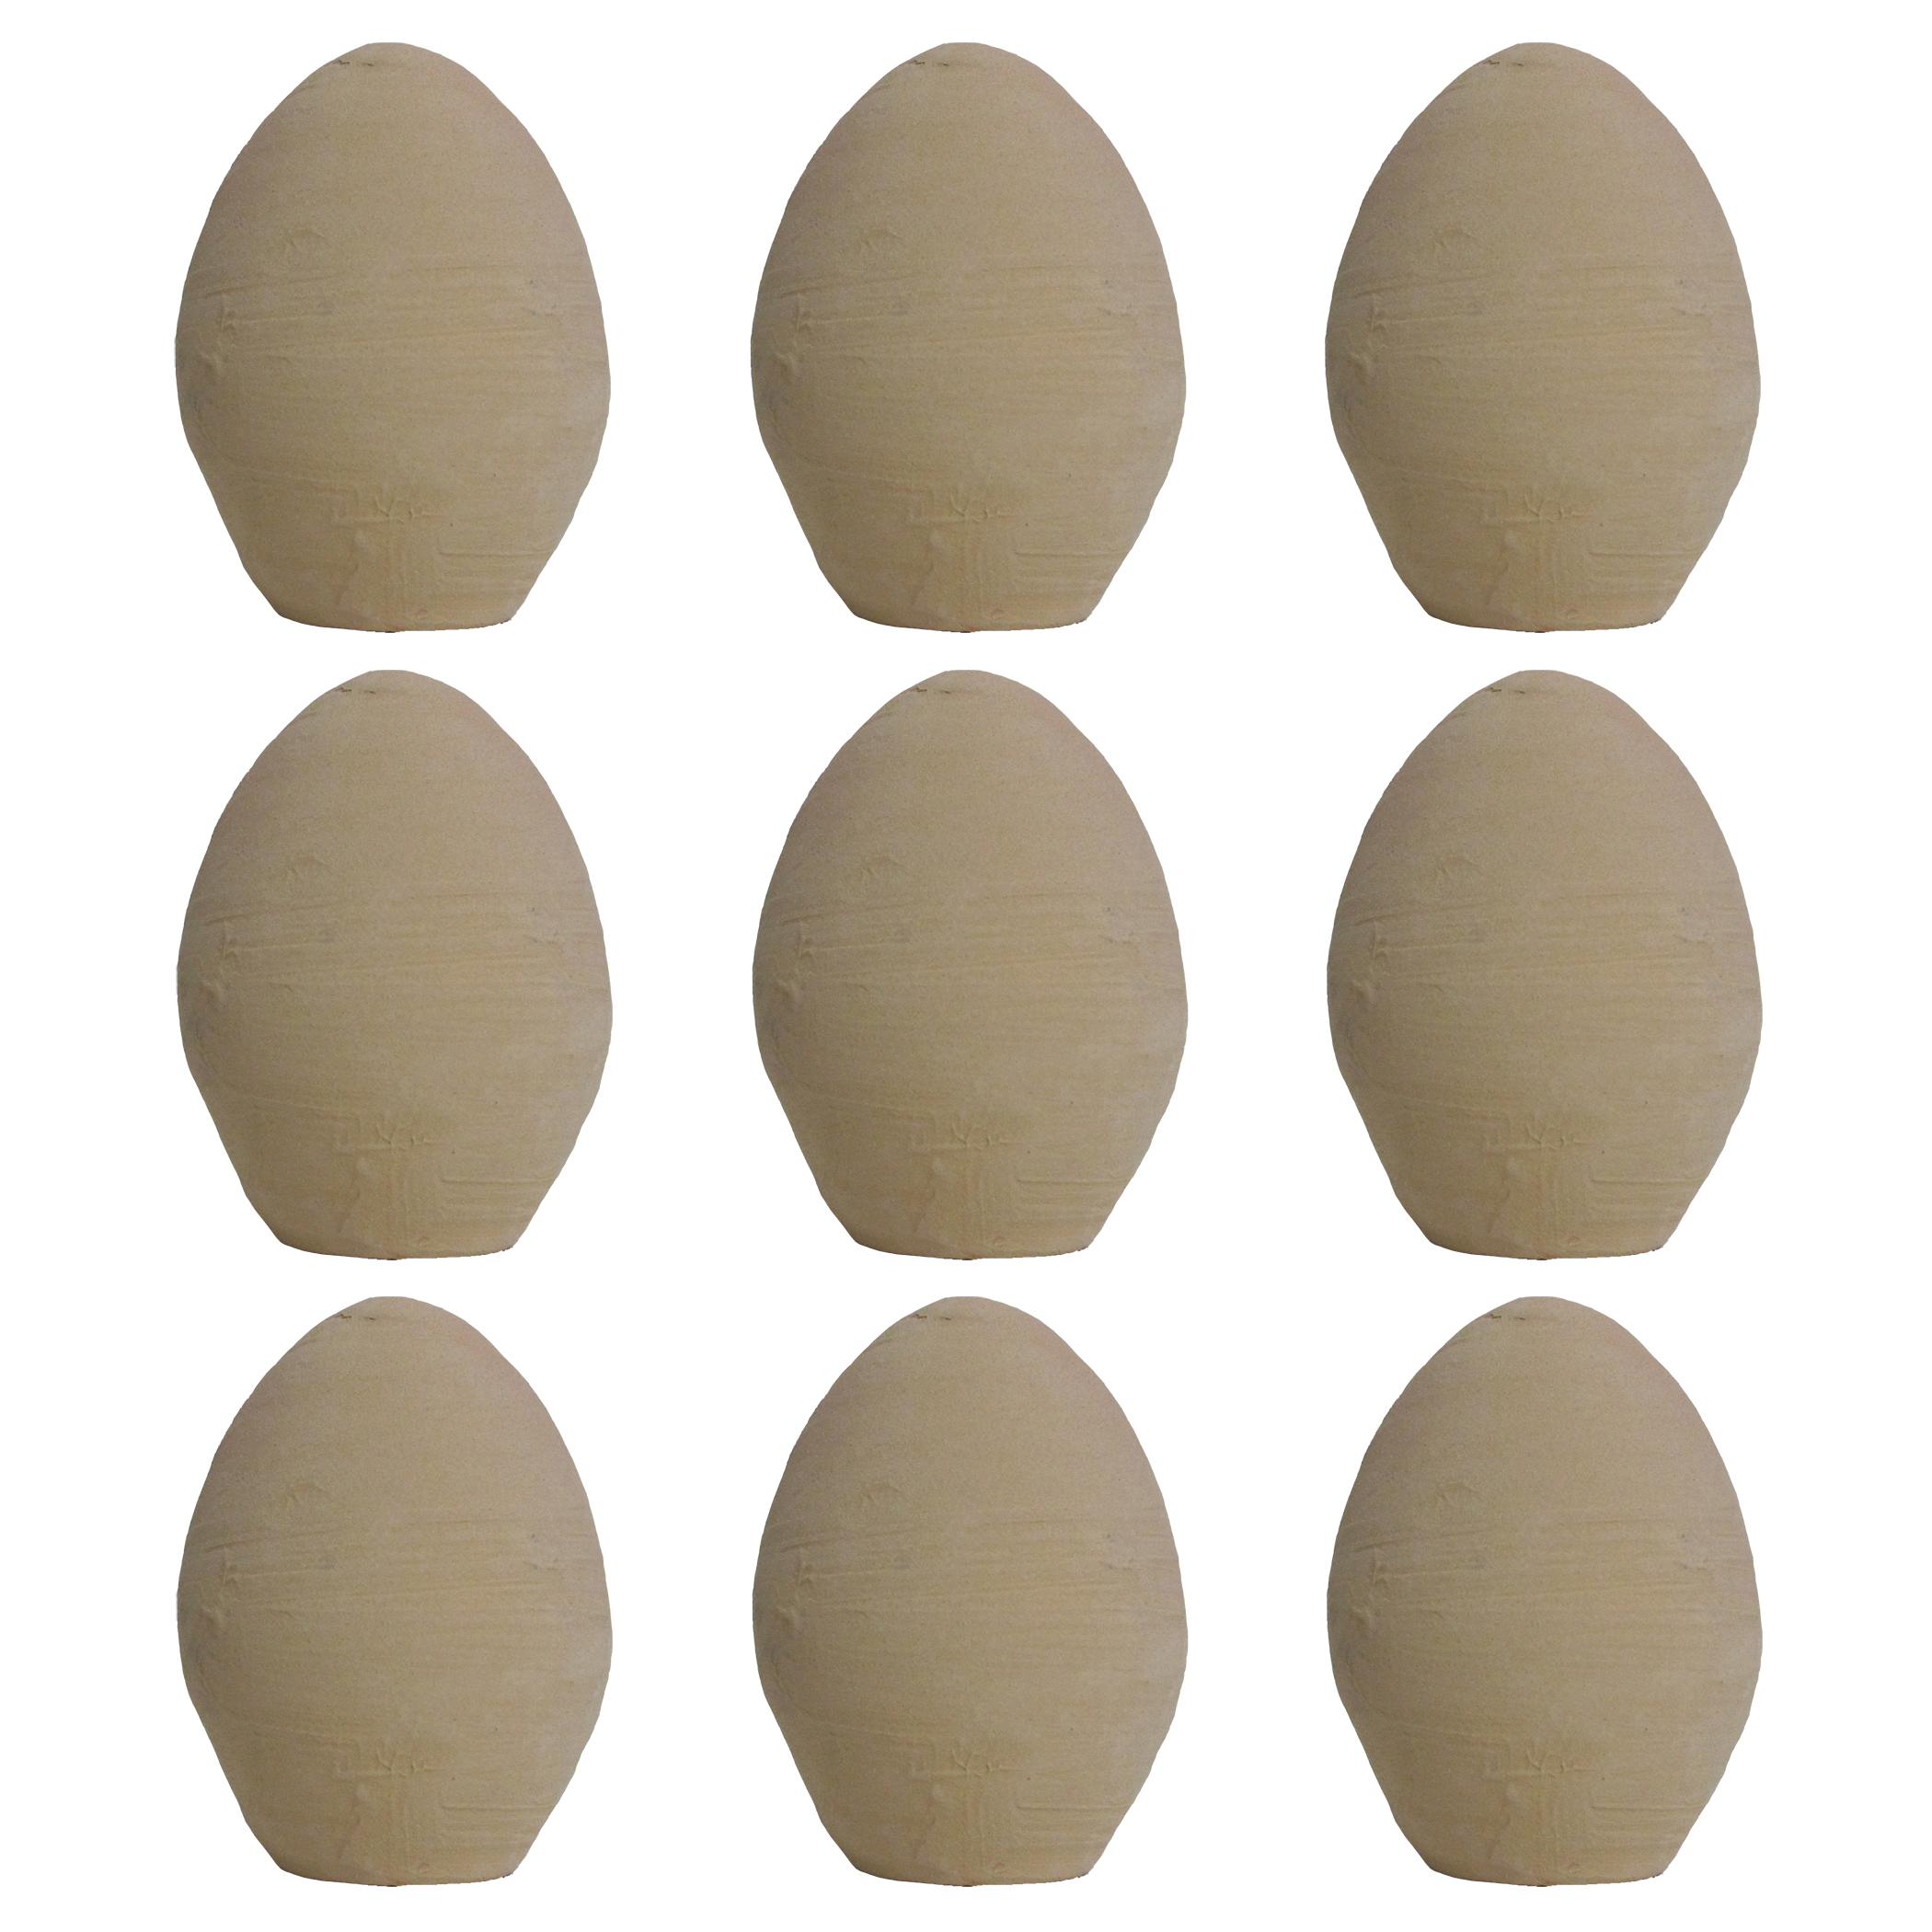 تخم مرغ تزیینی کد ۱۳۹۹ بسته ۹ عددی